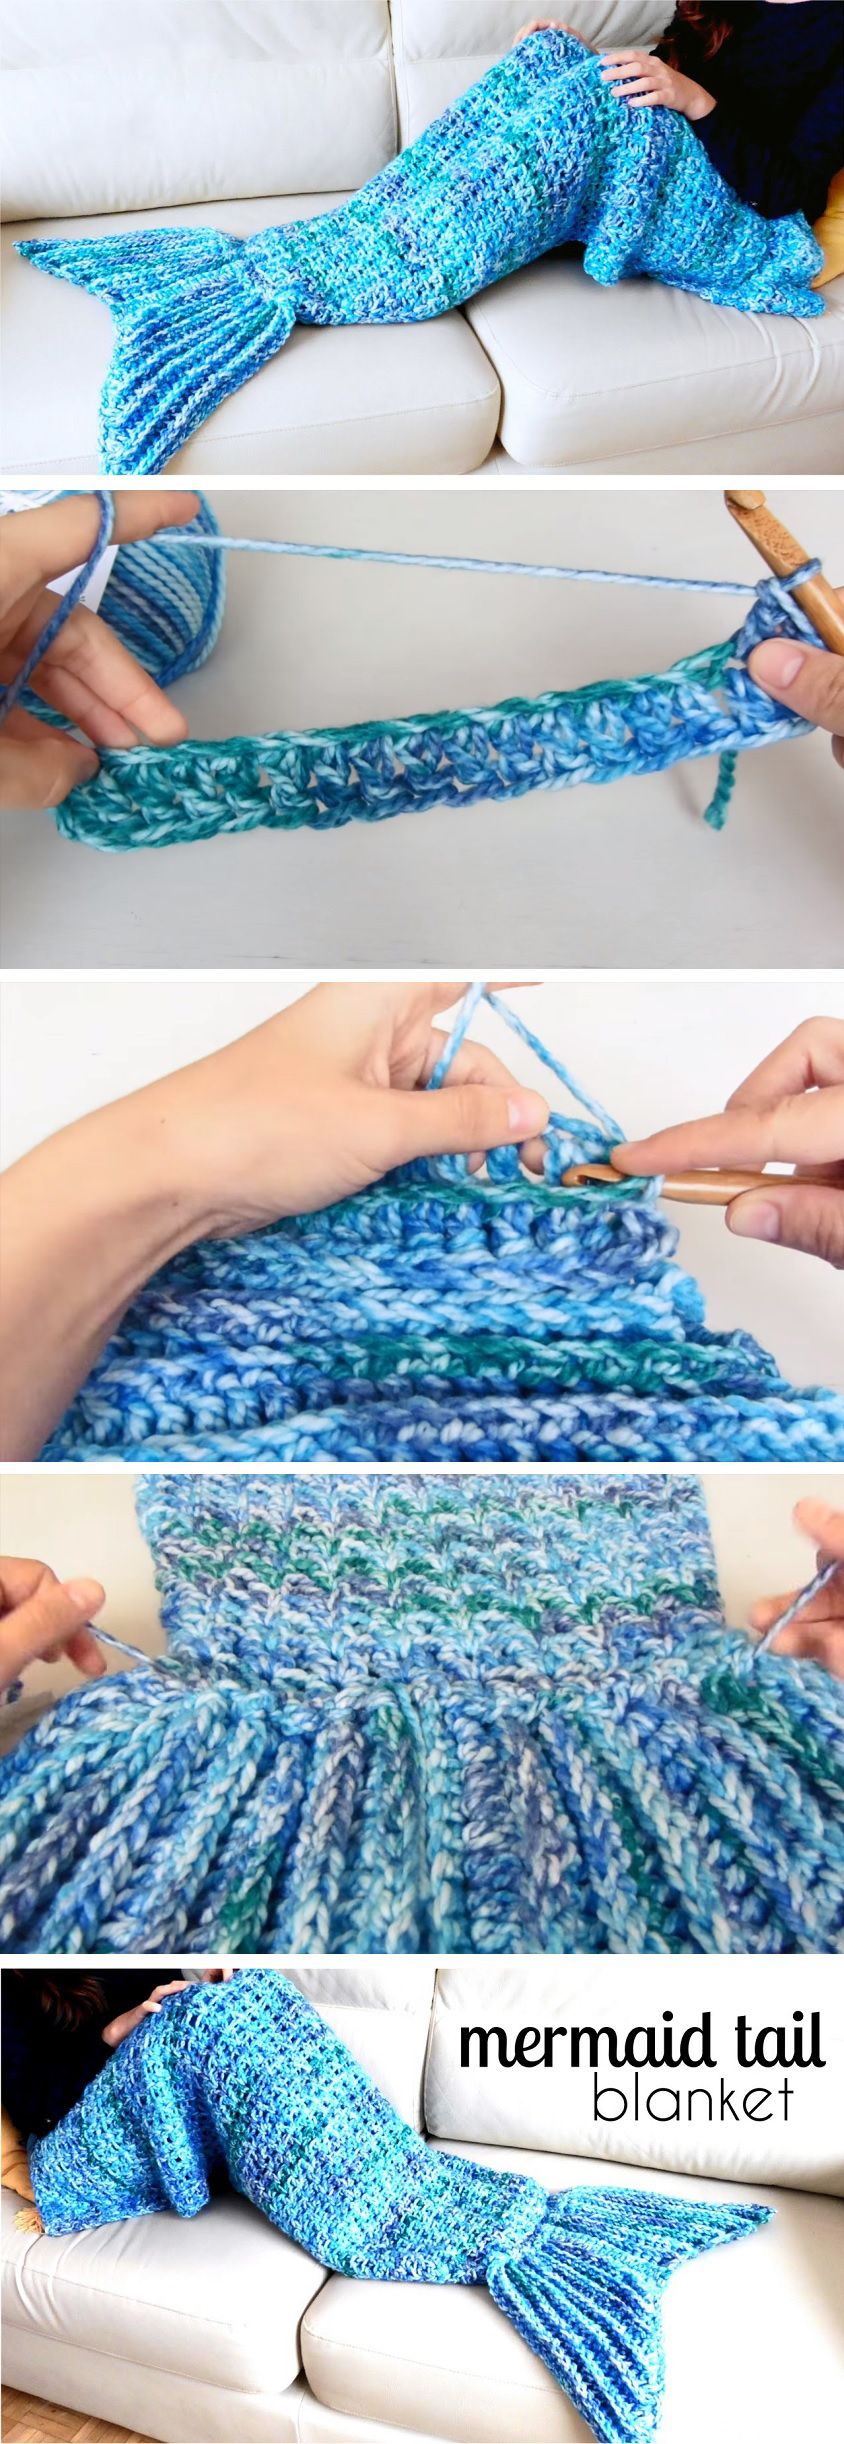 Crochet Mermaid Tail Blanket - Design Peak